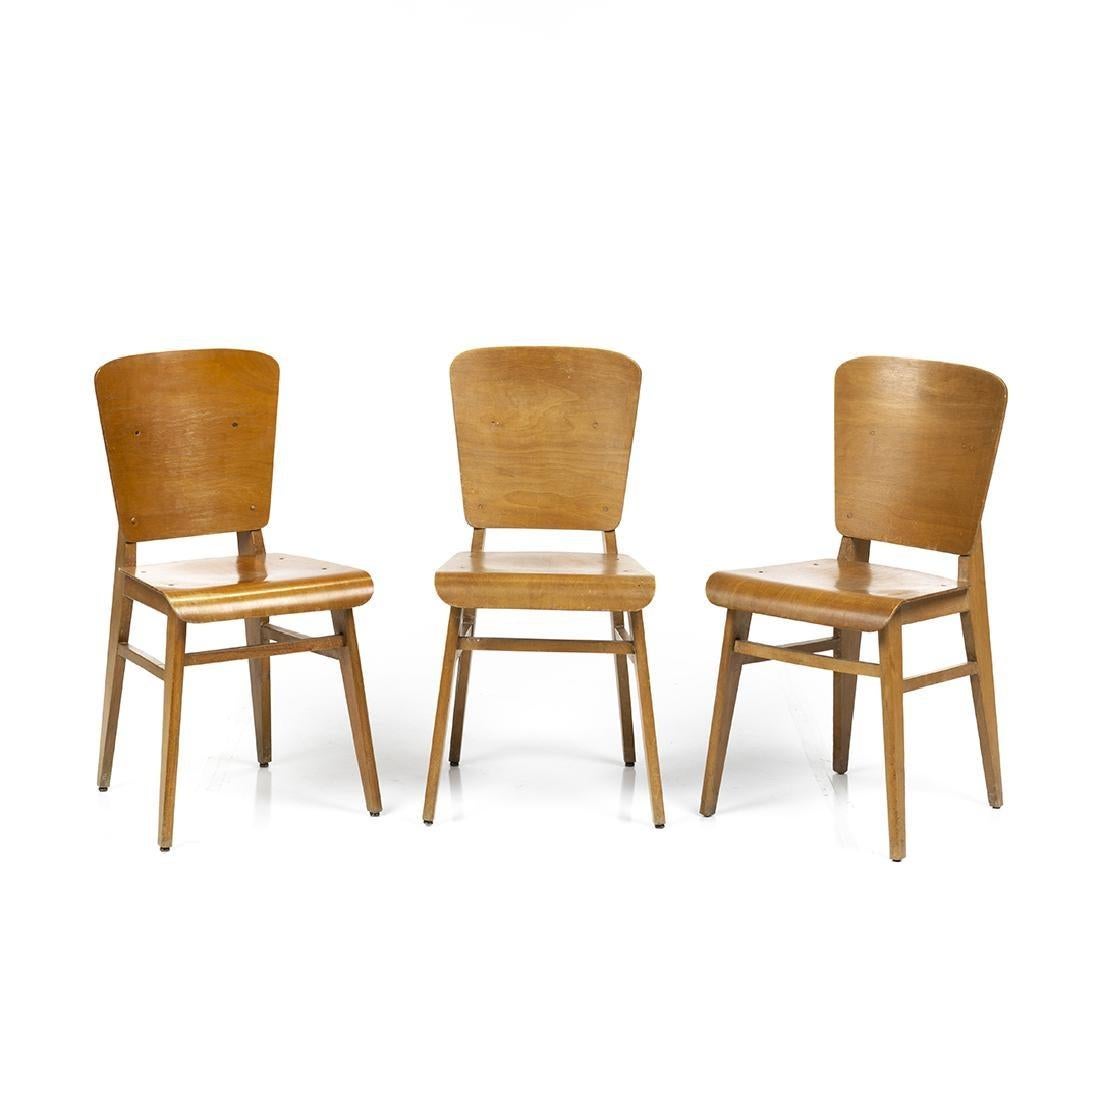 Satz von sechs Esszimmerstühlen aus geformtem Birkensperrholz im Stil von Jean Prouvé, Frankreich, ca. 1950er Jahre.